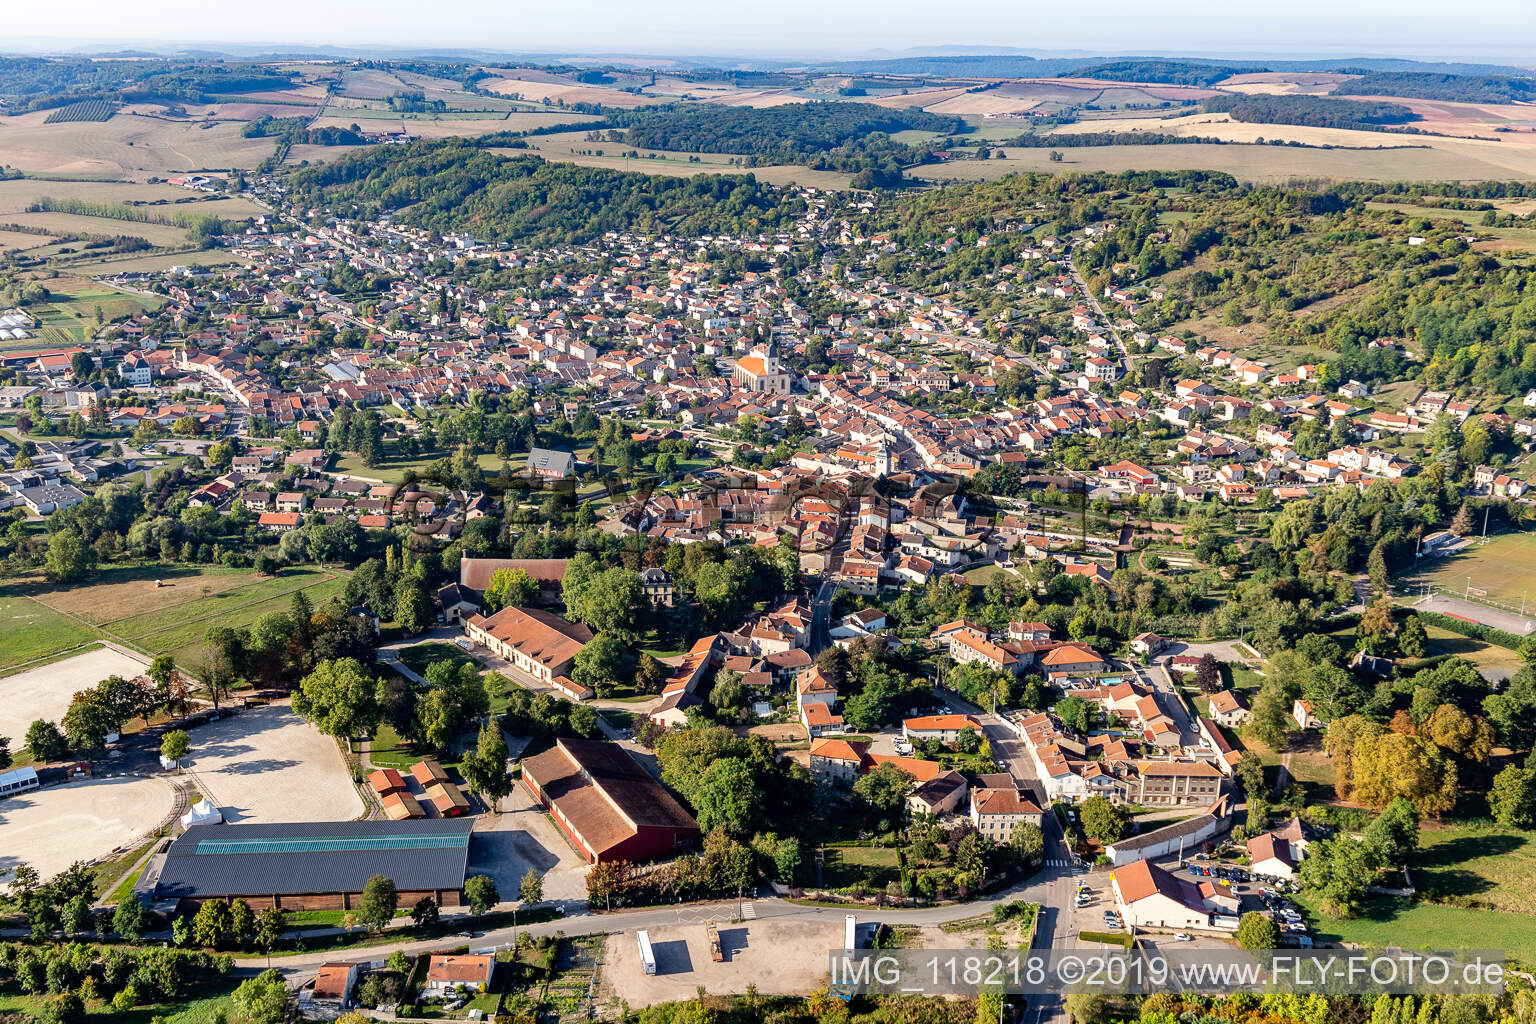 Vue aérienne de Rosières-aux-Salines dans le département Meurthe et Moselle, France